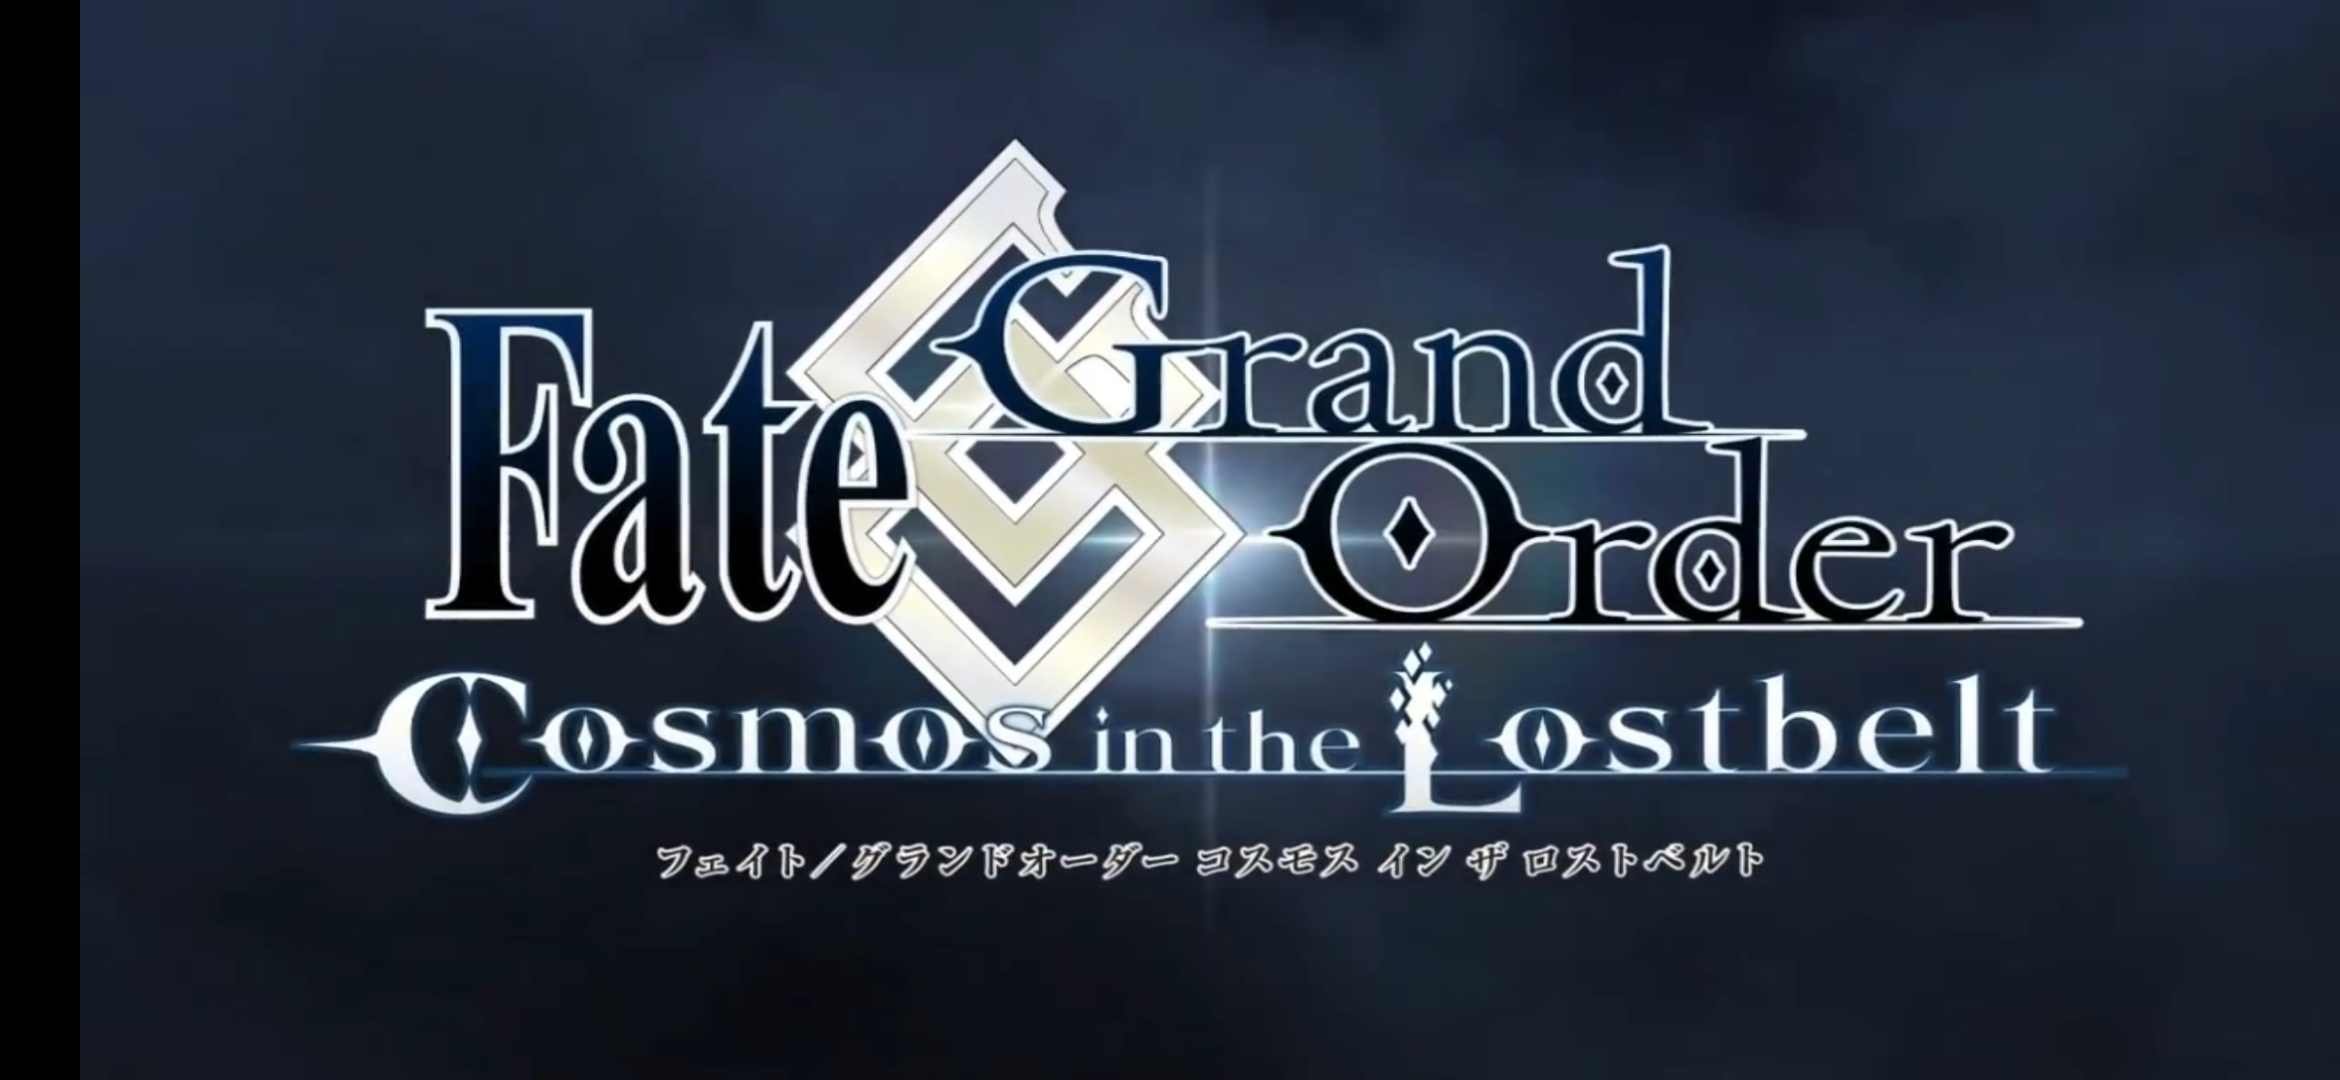 哇 Fgo第2部后期主题曲 躍動 公 命运 冠位指定 Fate Grand Order 日服资讯 Taptap 命运 冠位指定 Fate Grand Order 社区